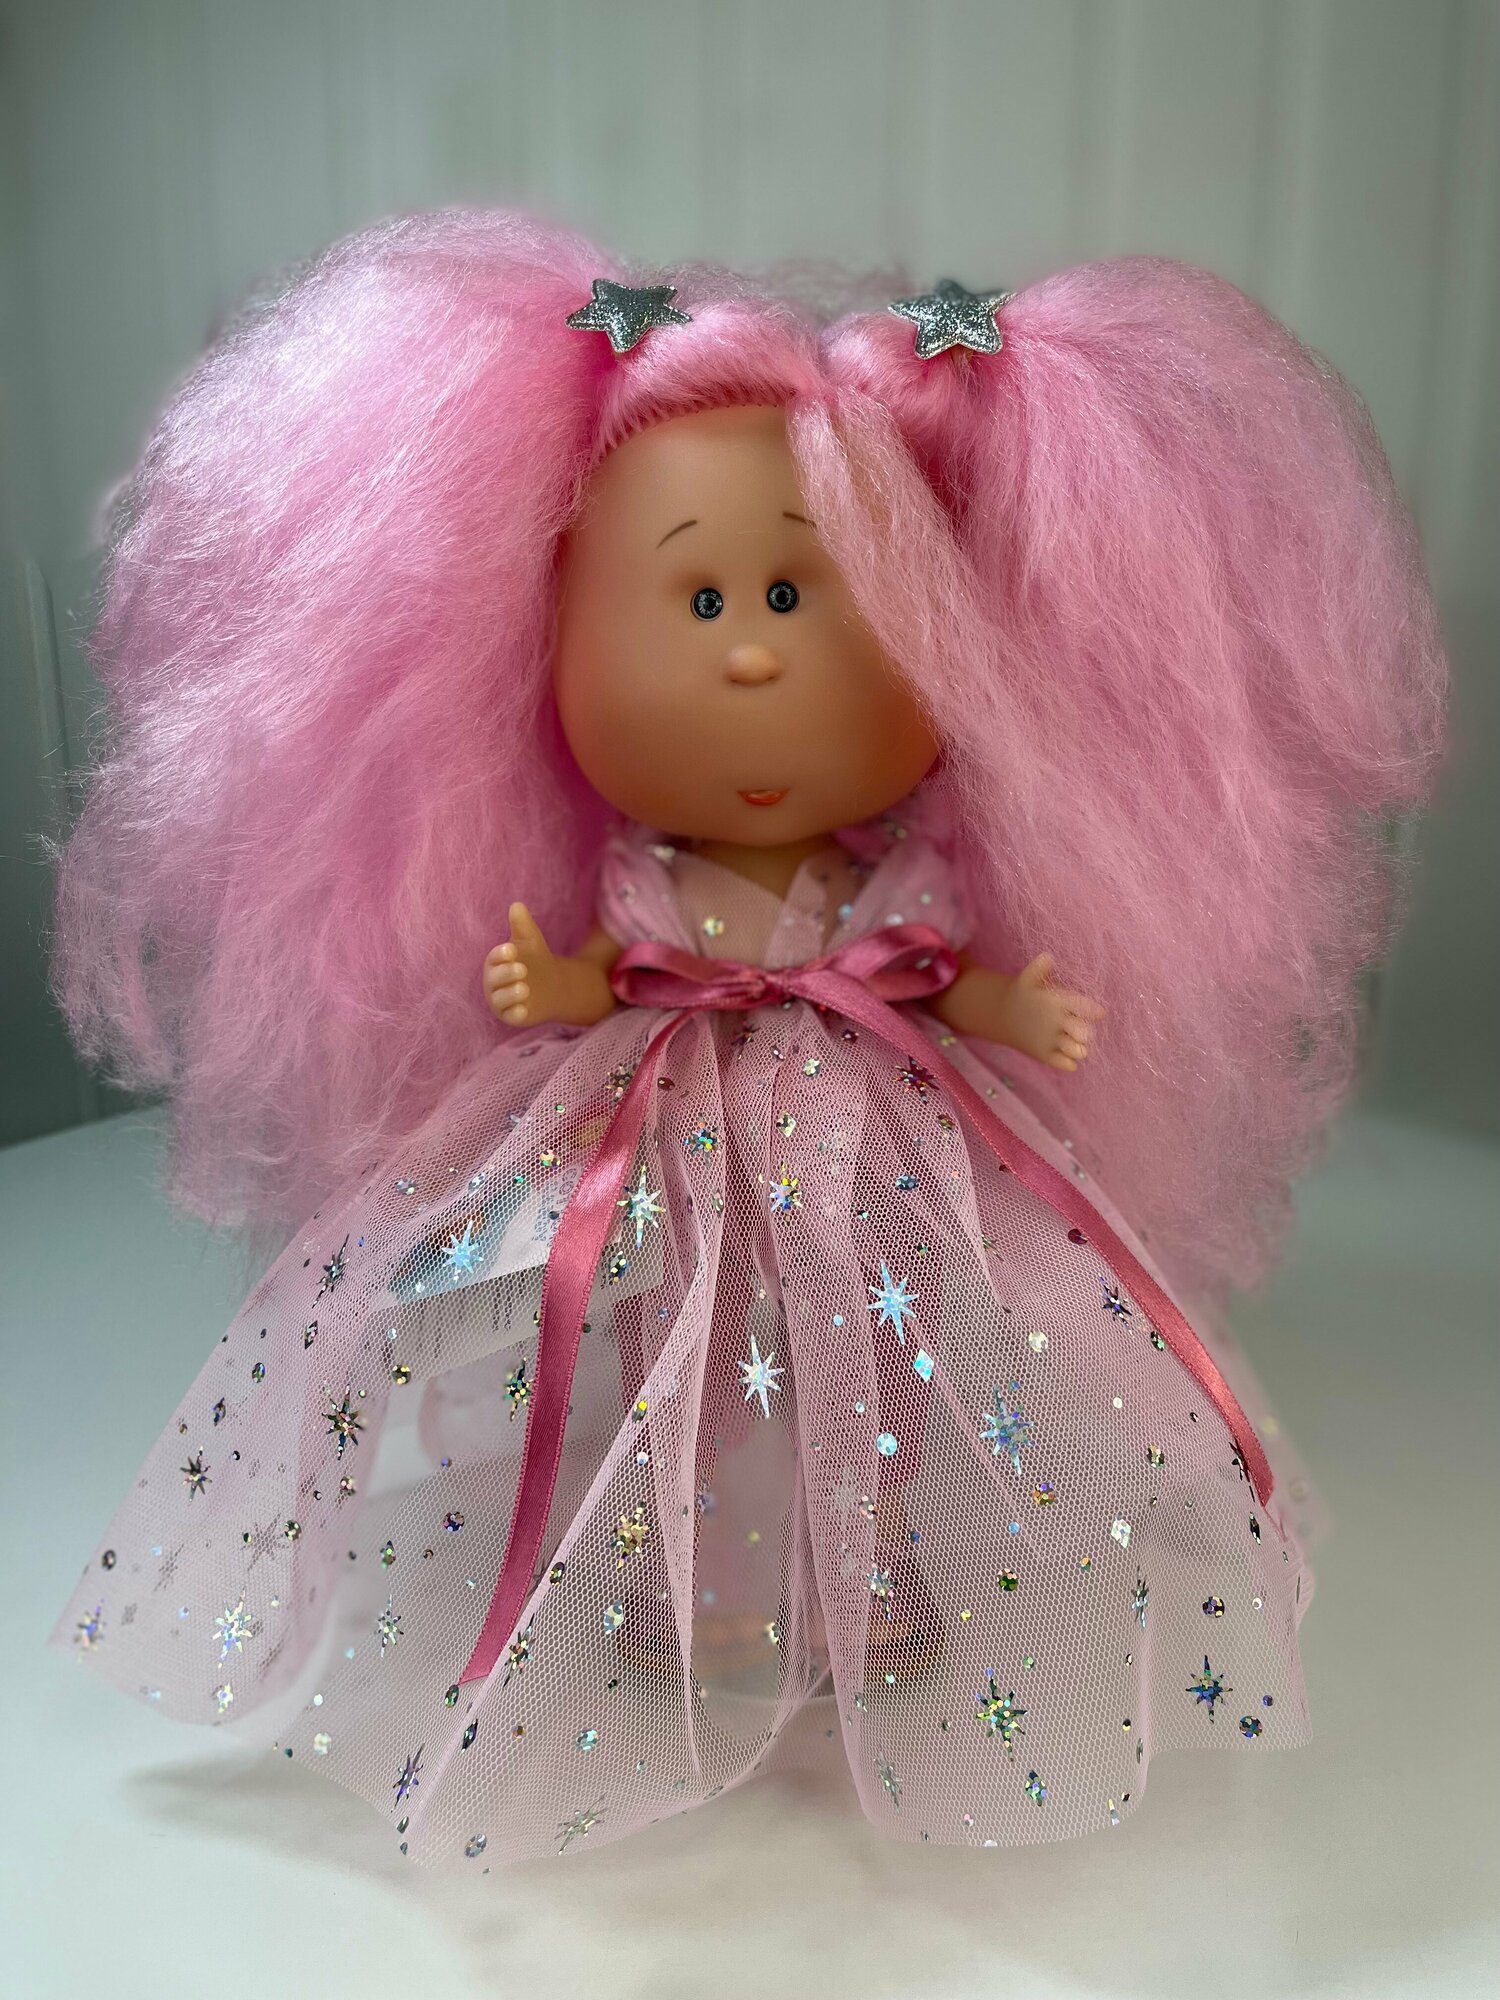 Кукла Nines D'Onil "Mia cotton candy", 30 см, арт. 1101